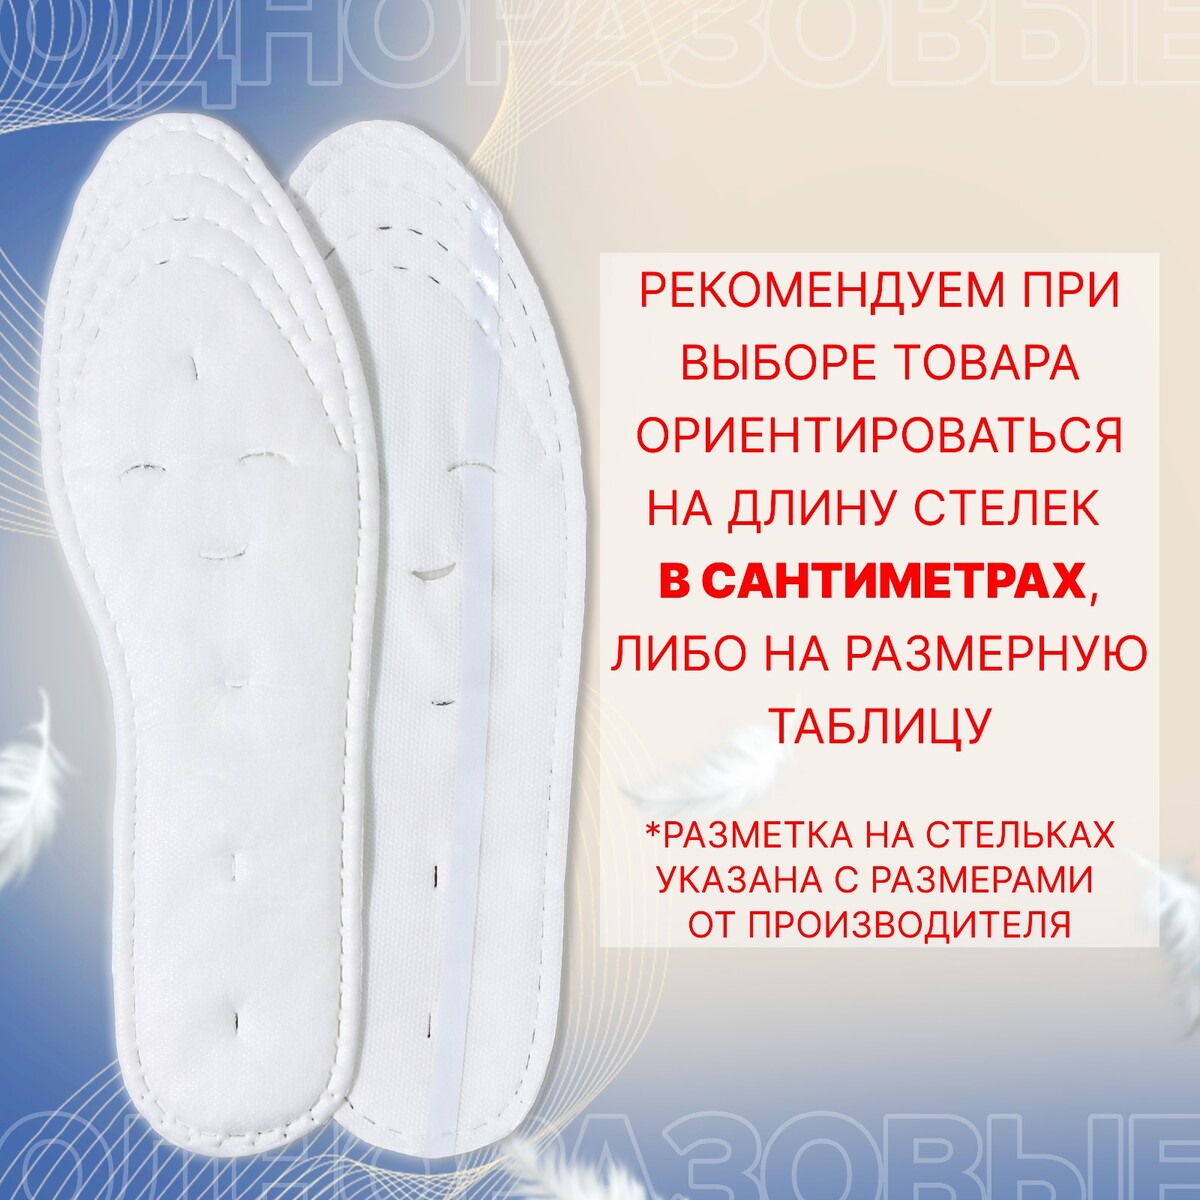 Набор одноразовых для обуви хлопковые универсальные ONLITOP, цвет белый 011074655 - фото 4